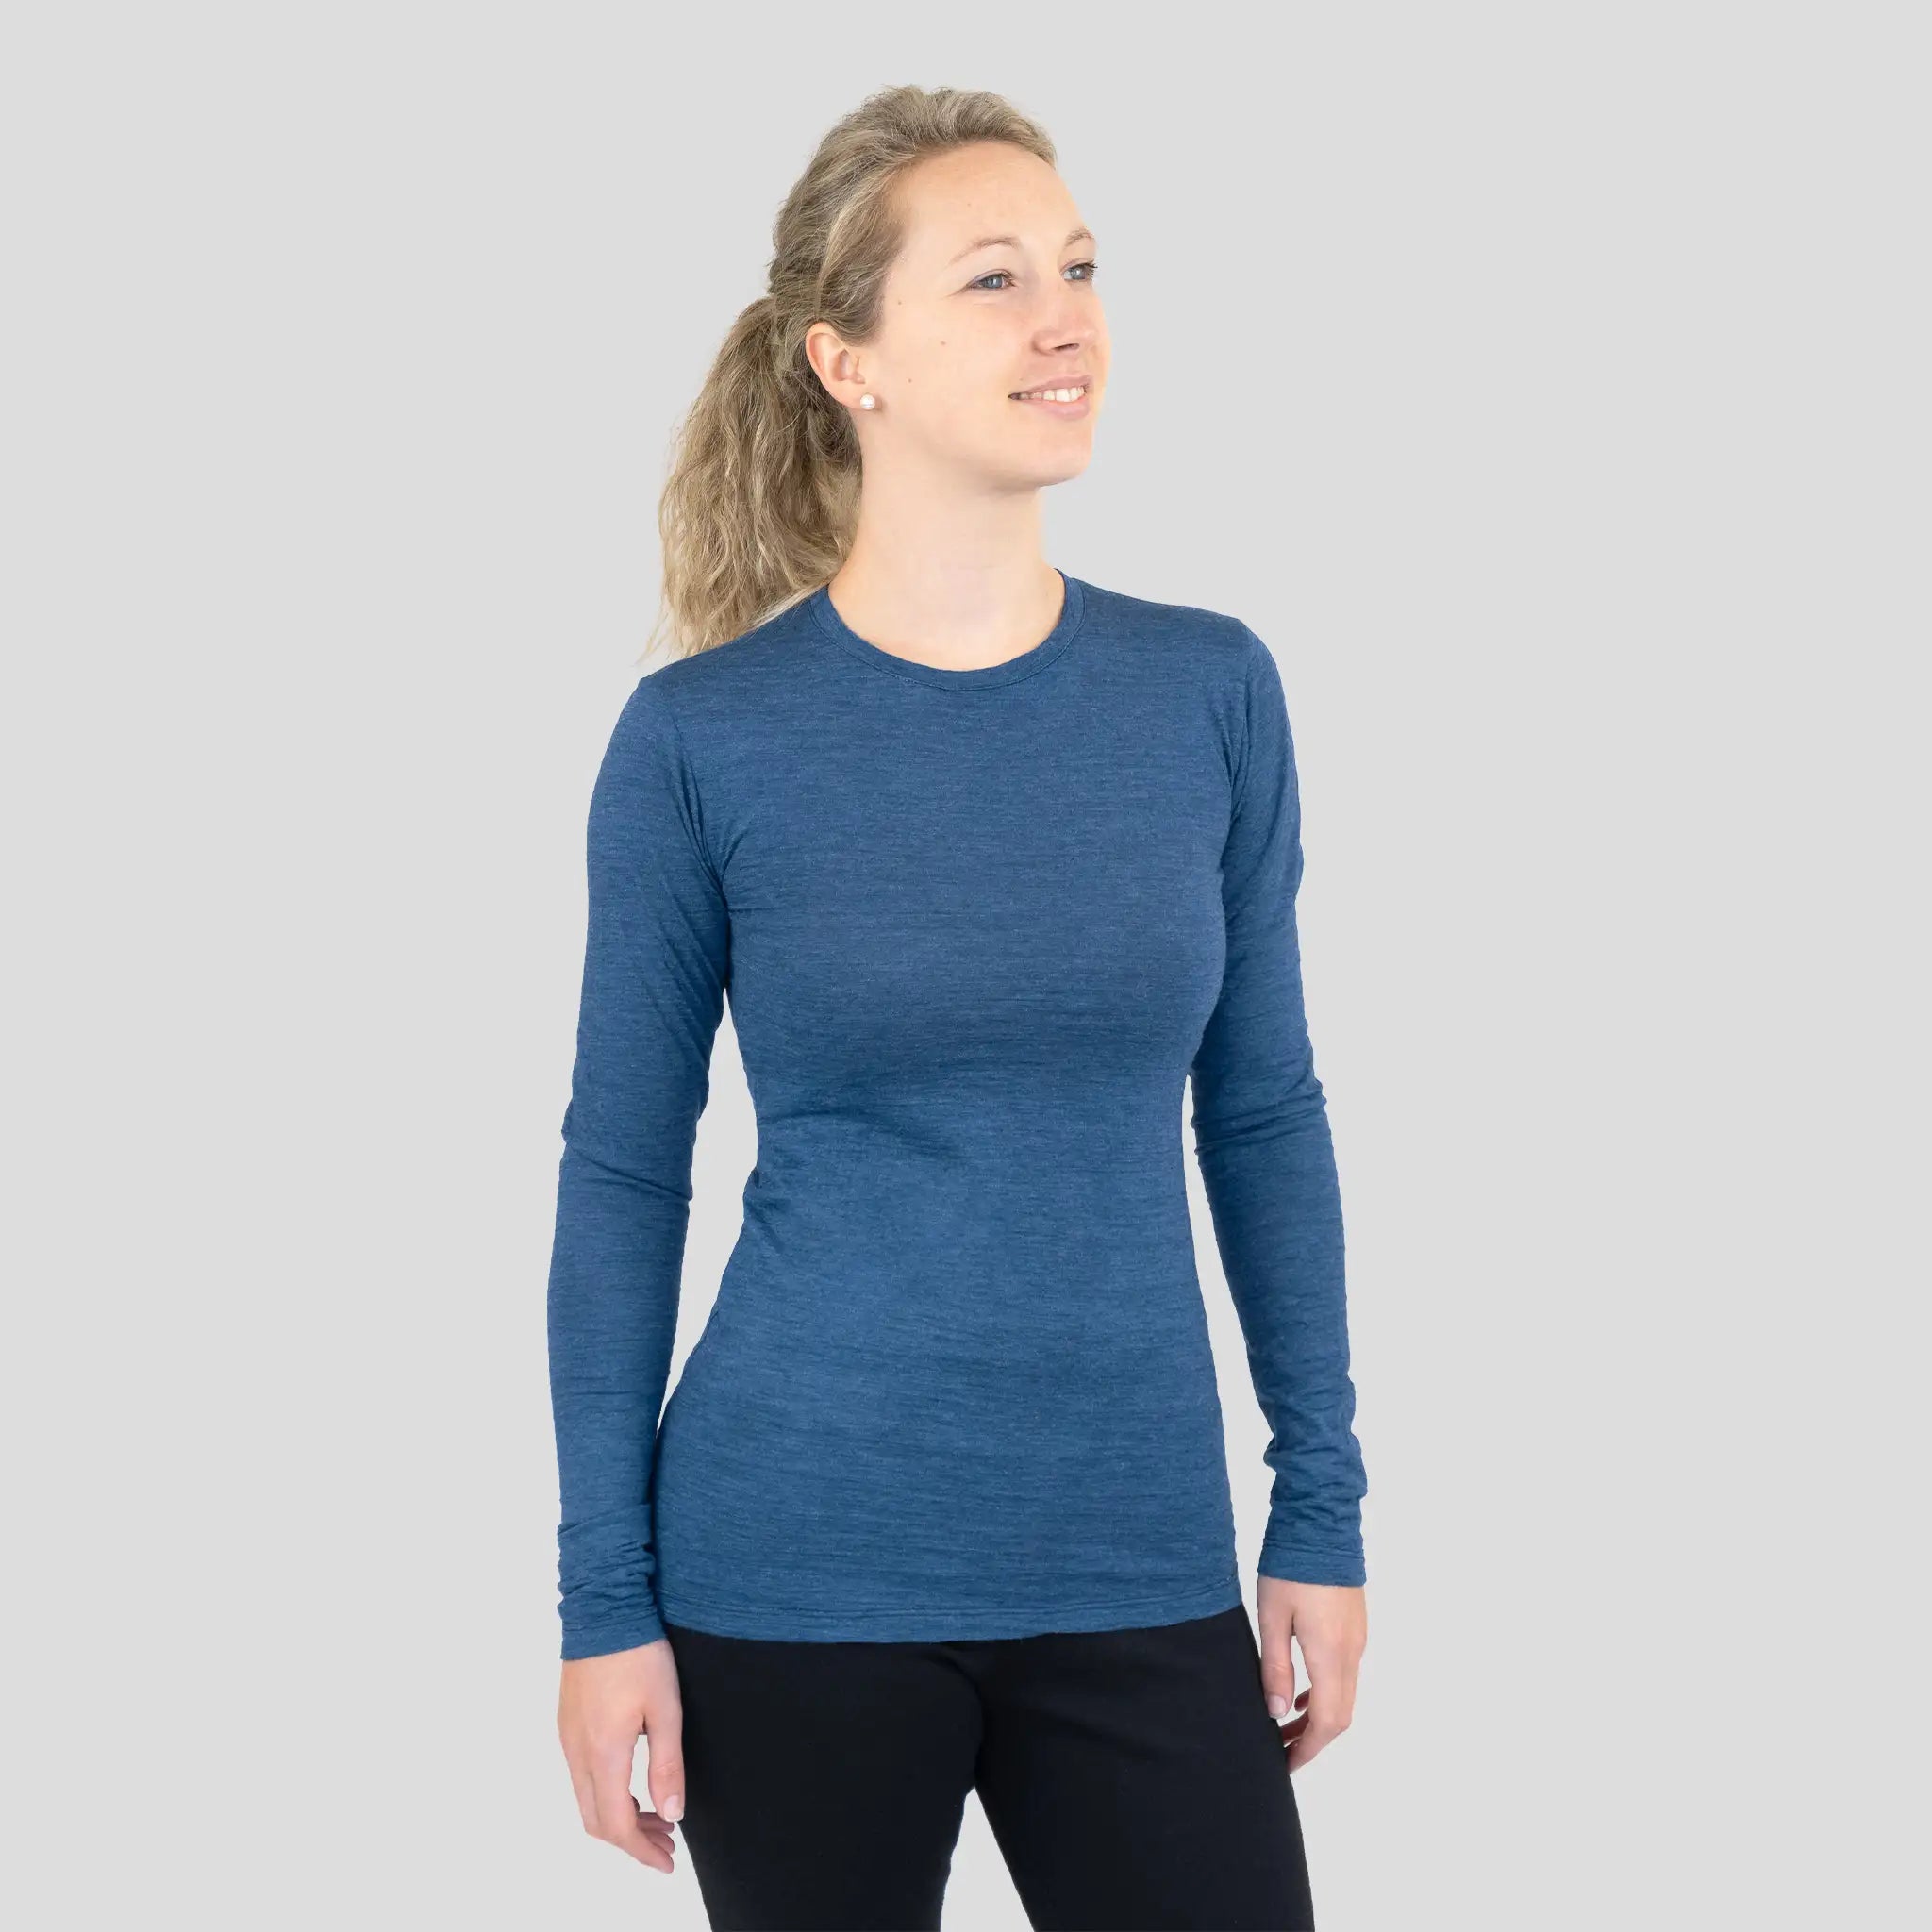 women alpaca wool shirt long sleeve ultralight color natural blue